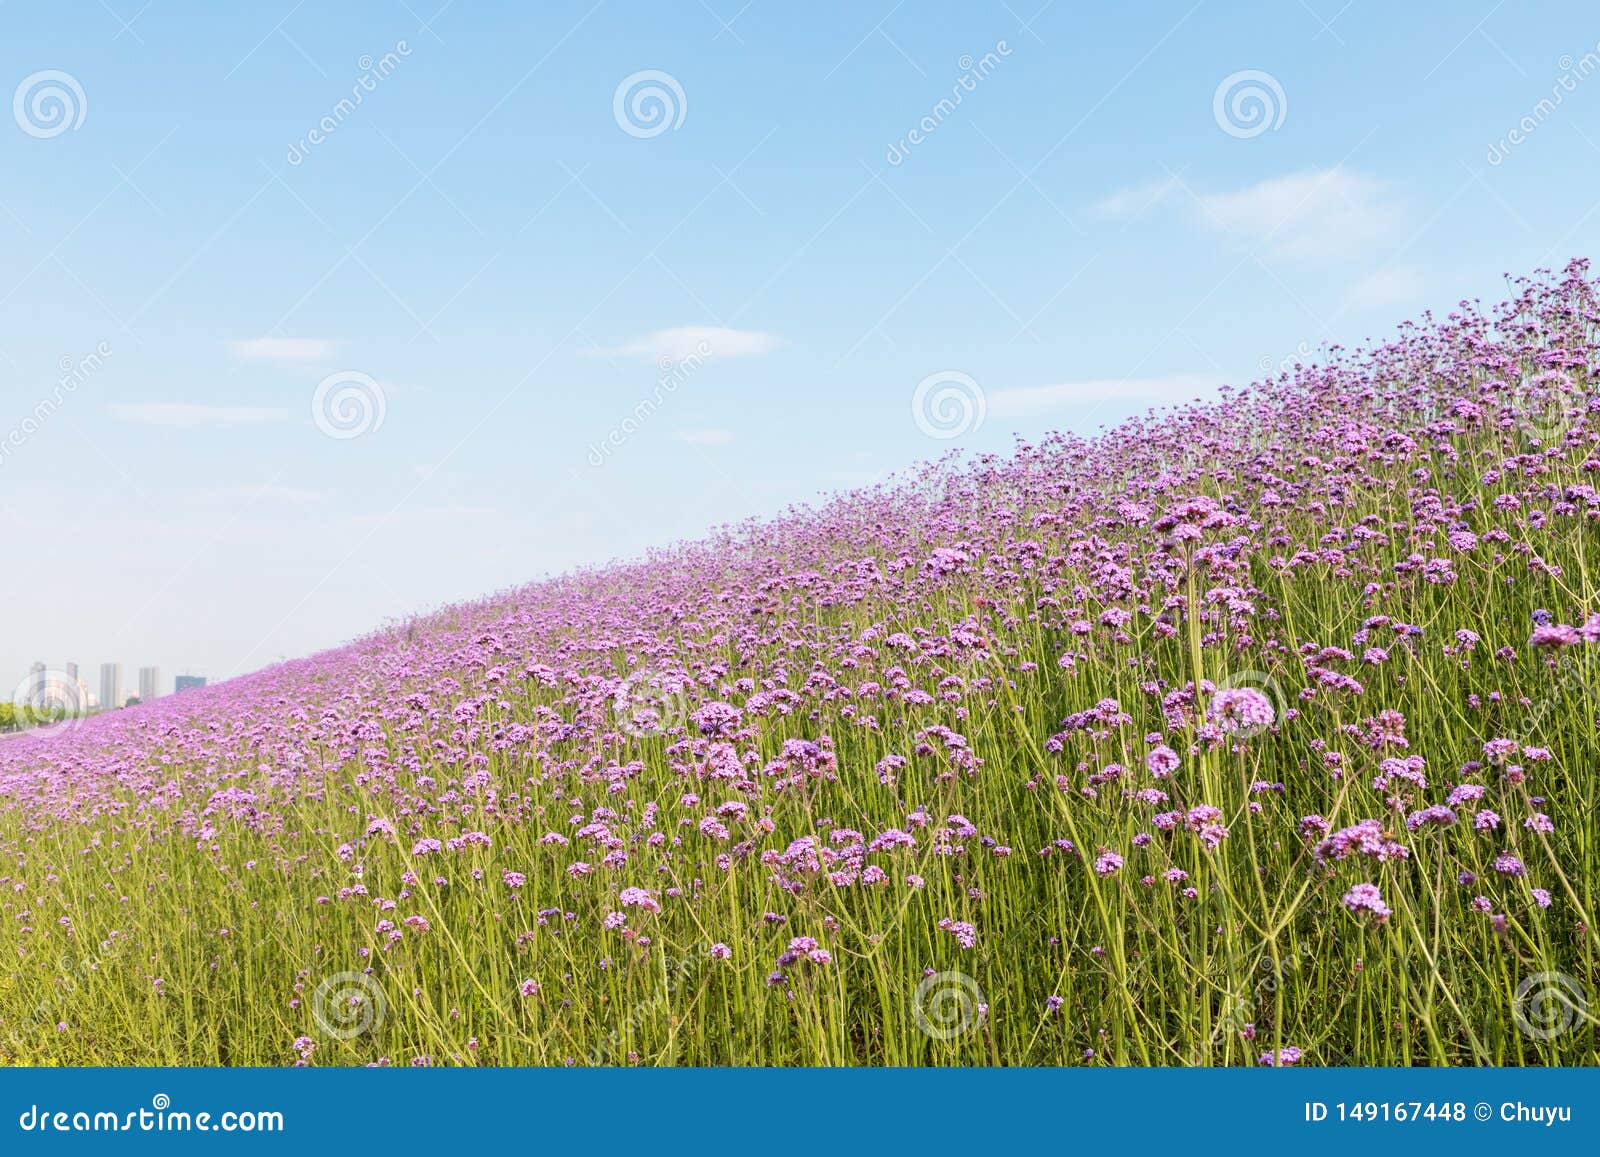 blooming purple verbena bonariensis